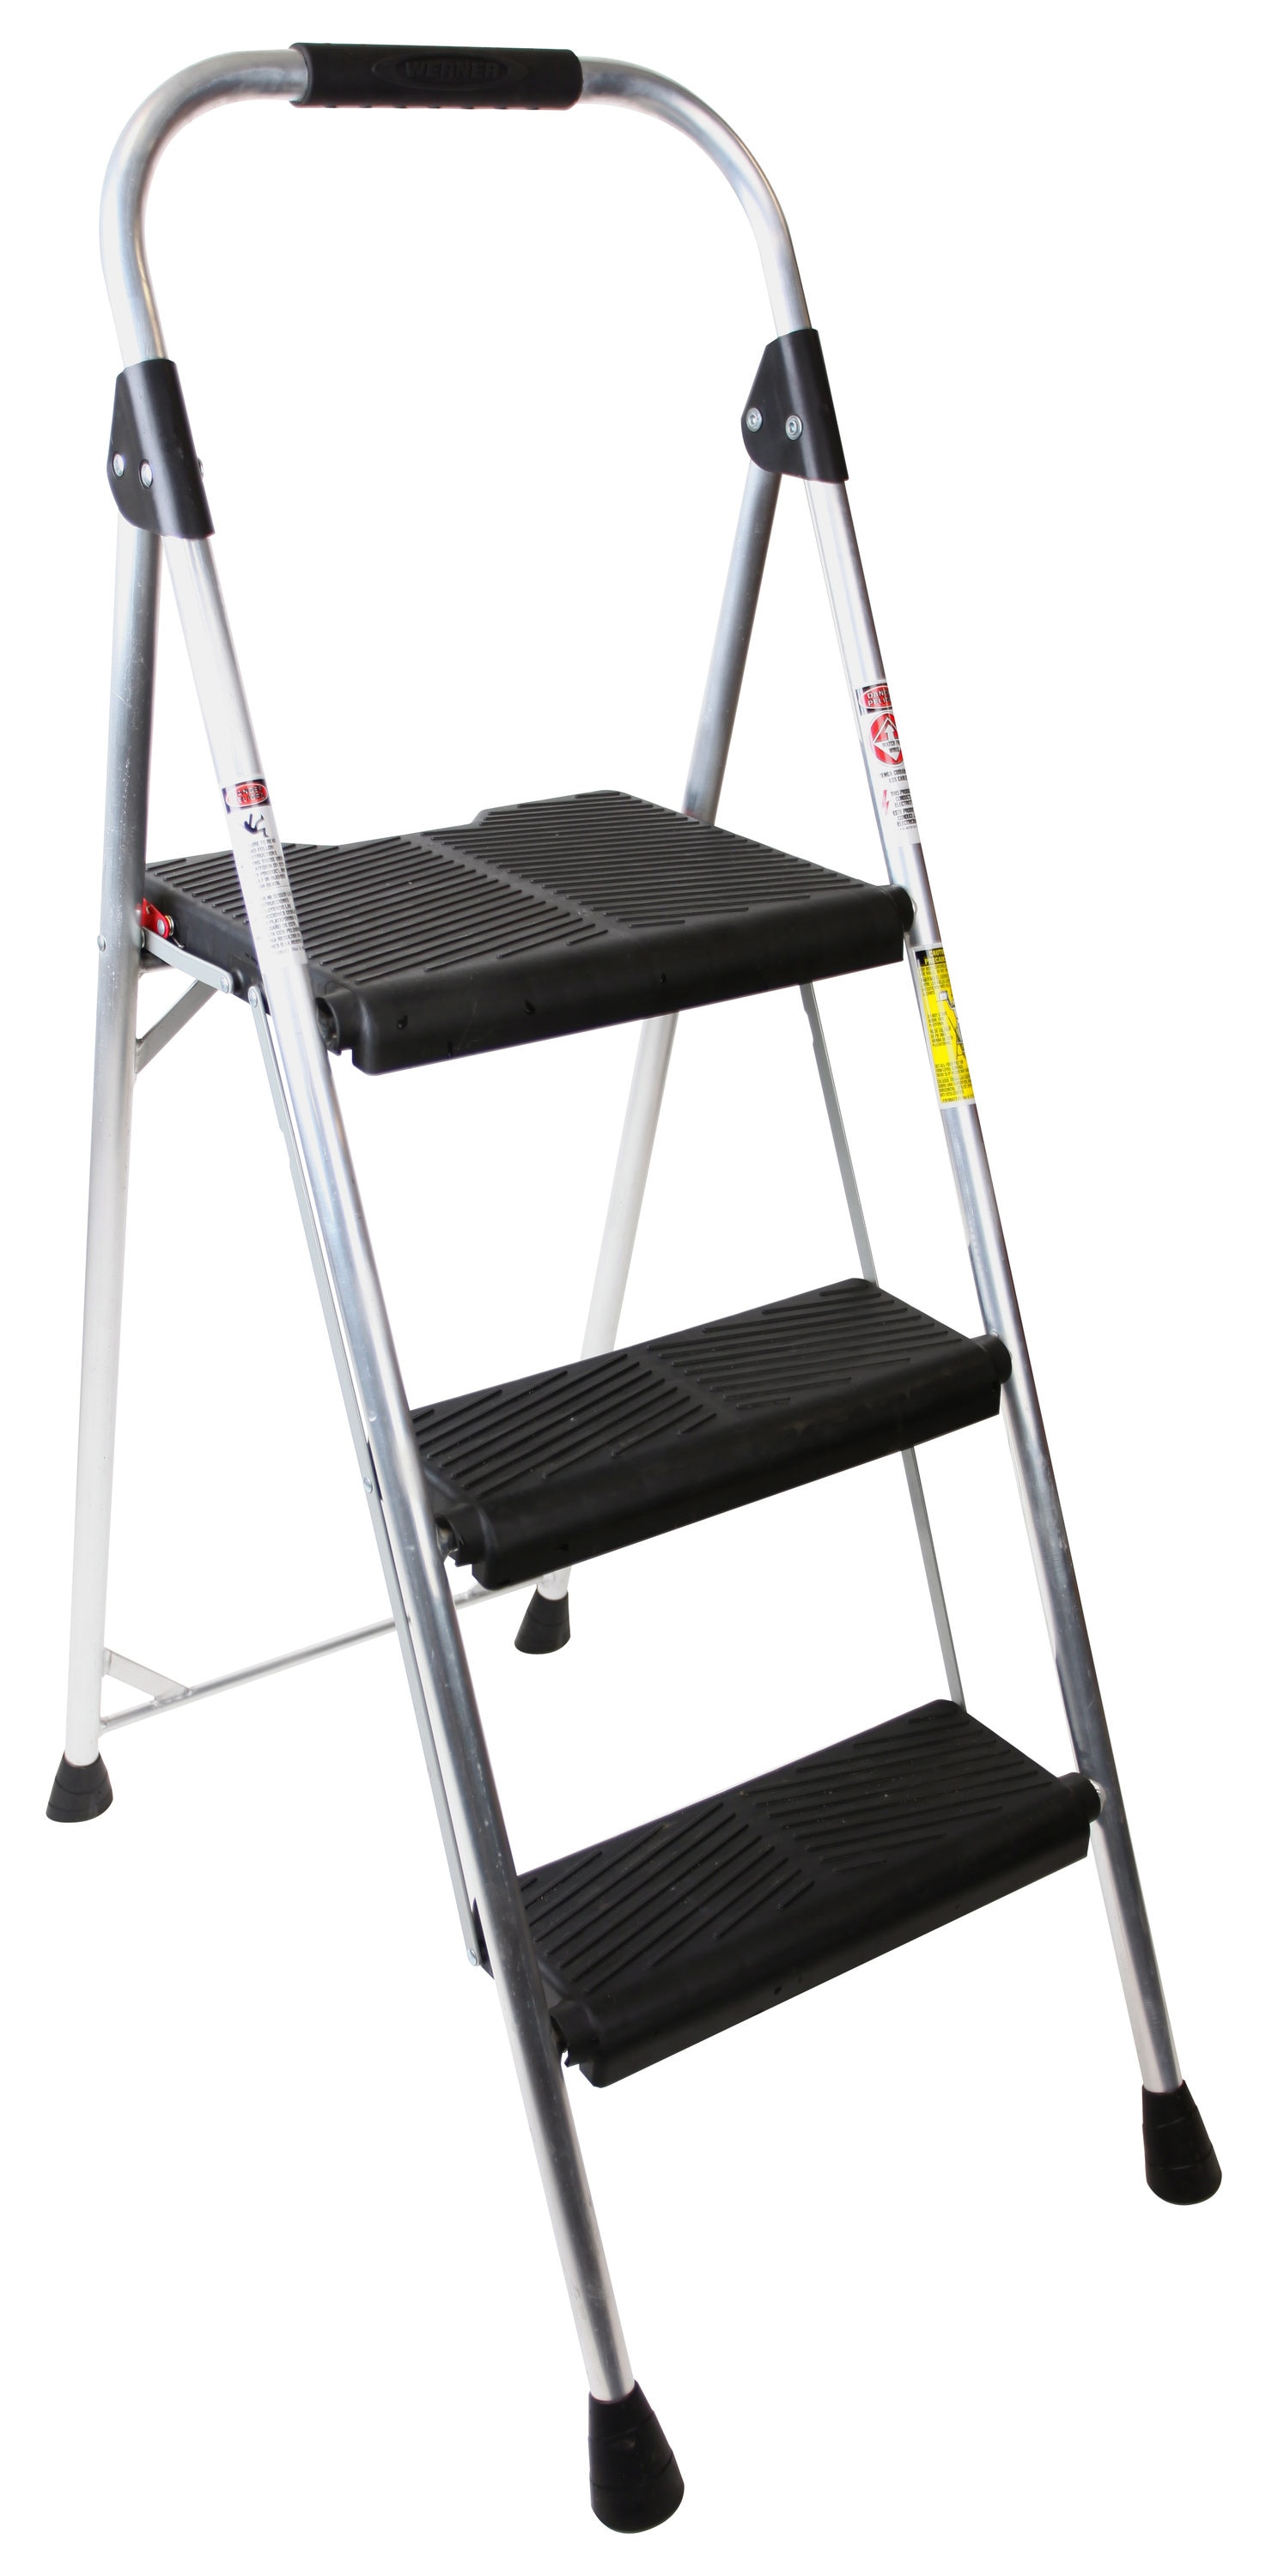 New Aluminum Ladder 3 Step Folding Platform Work Stool Lightweight Home Kitchen